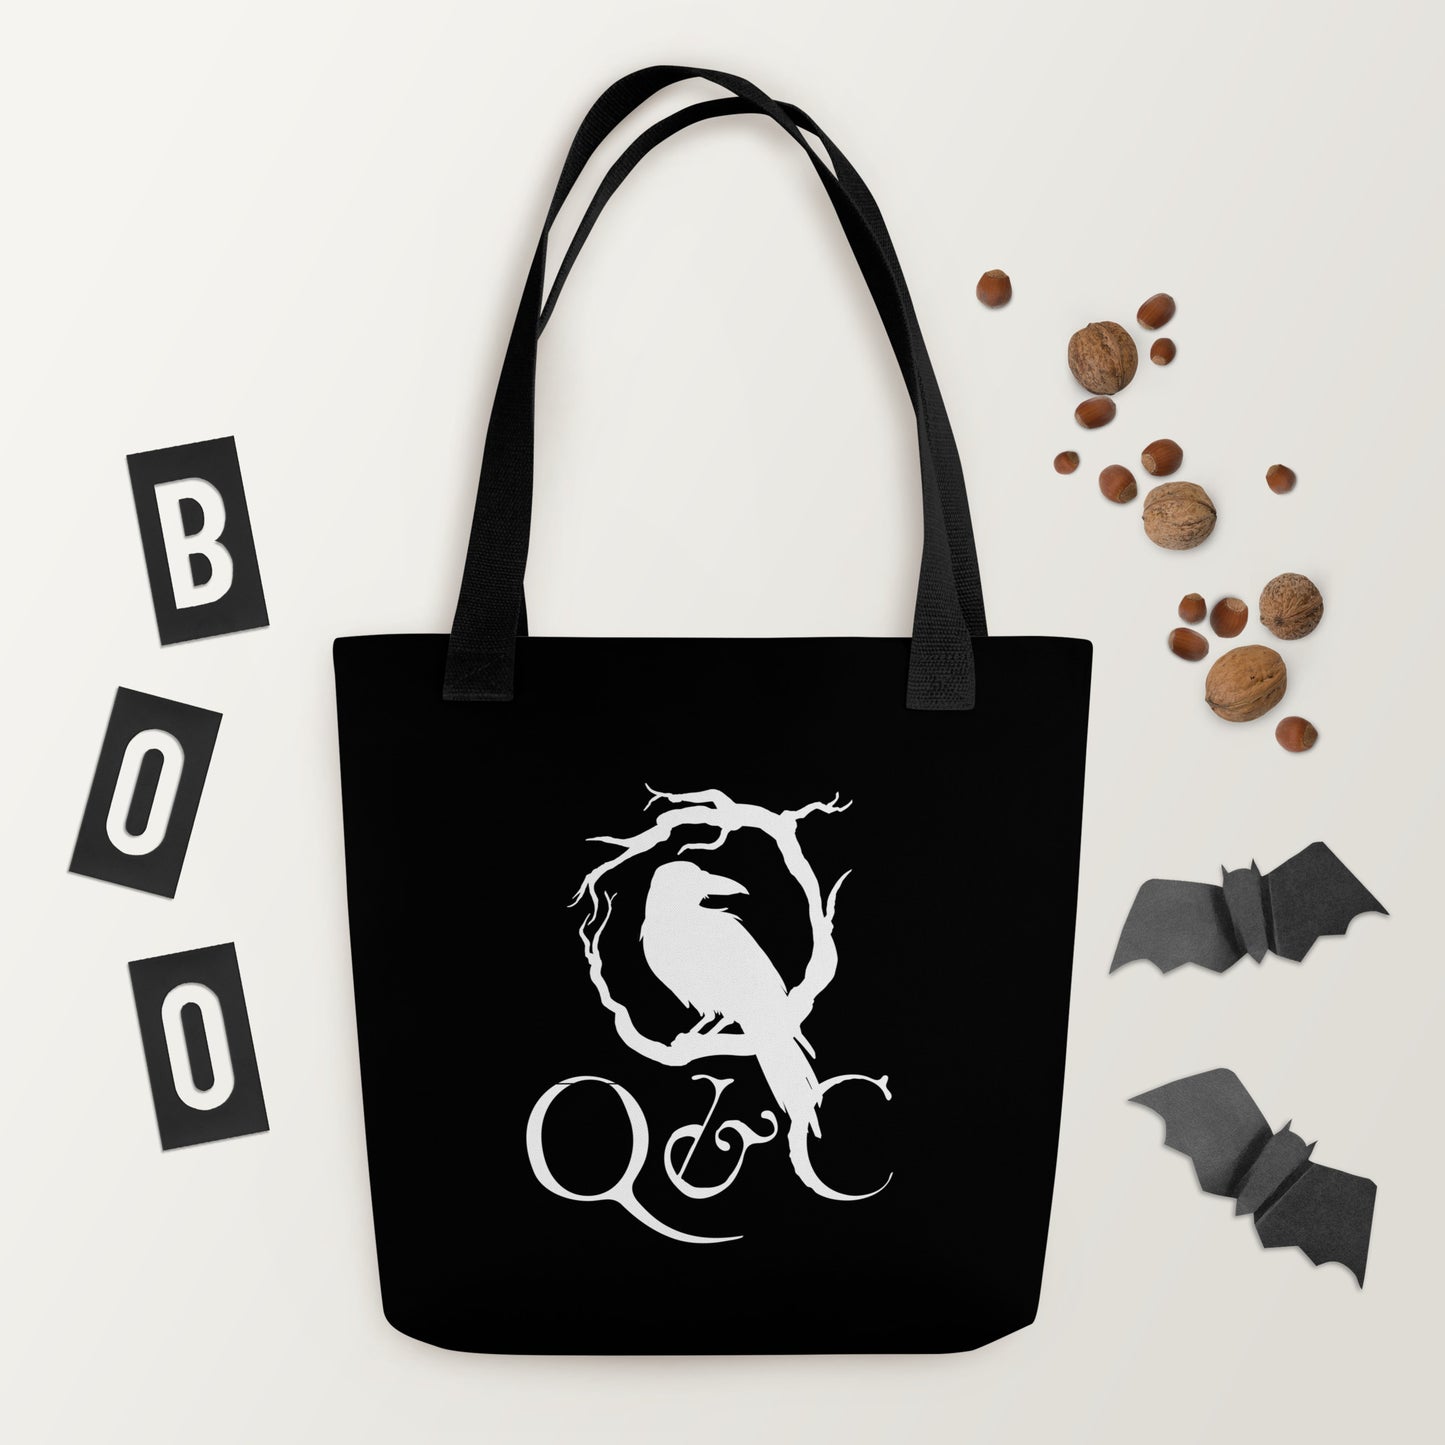 Q&C Tote Bag